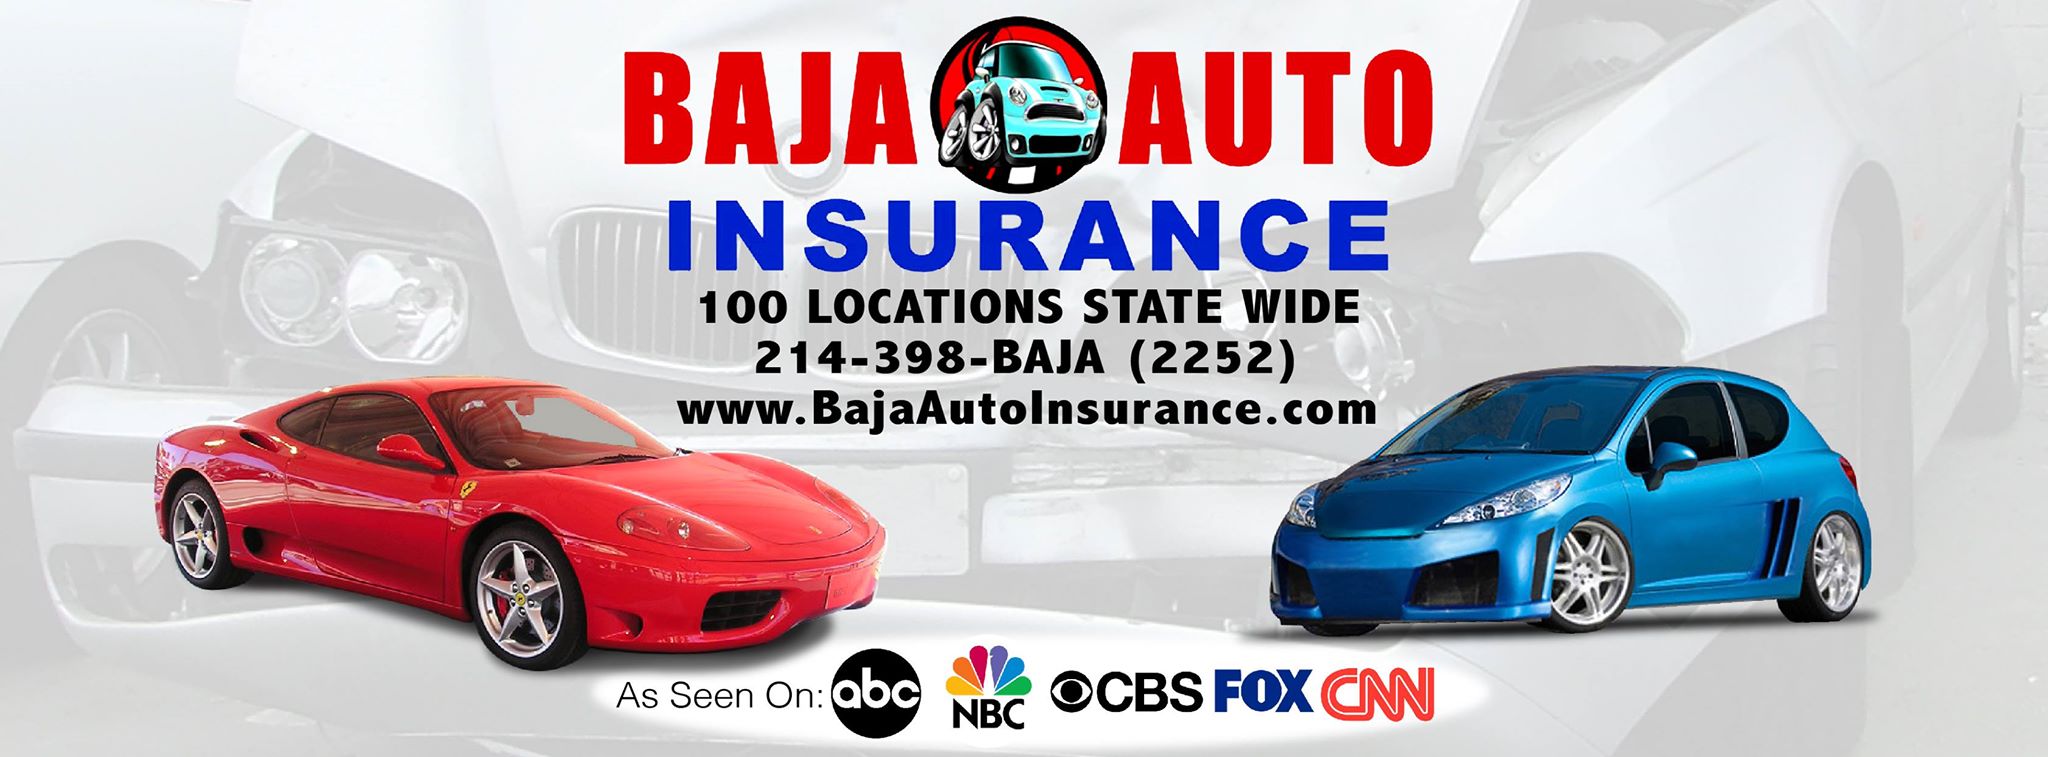 BAJA Auto Ins. - HIRING Bilingual Customer Service & Sales ...